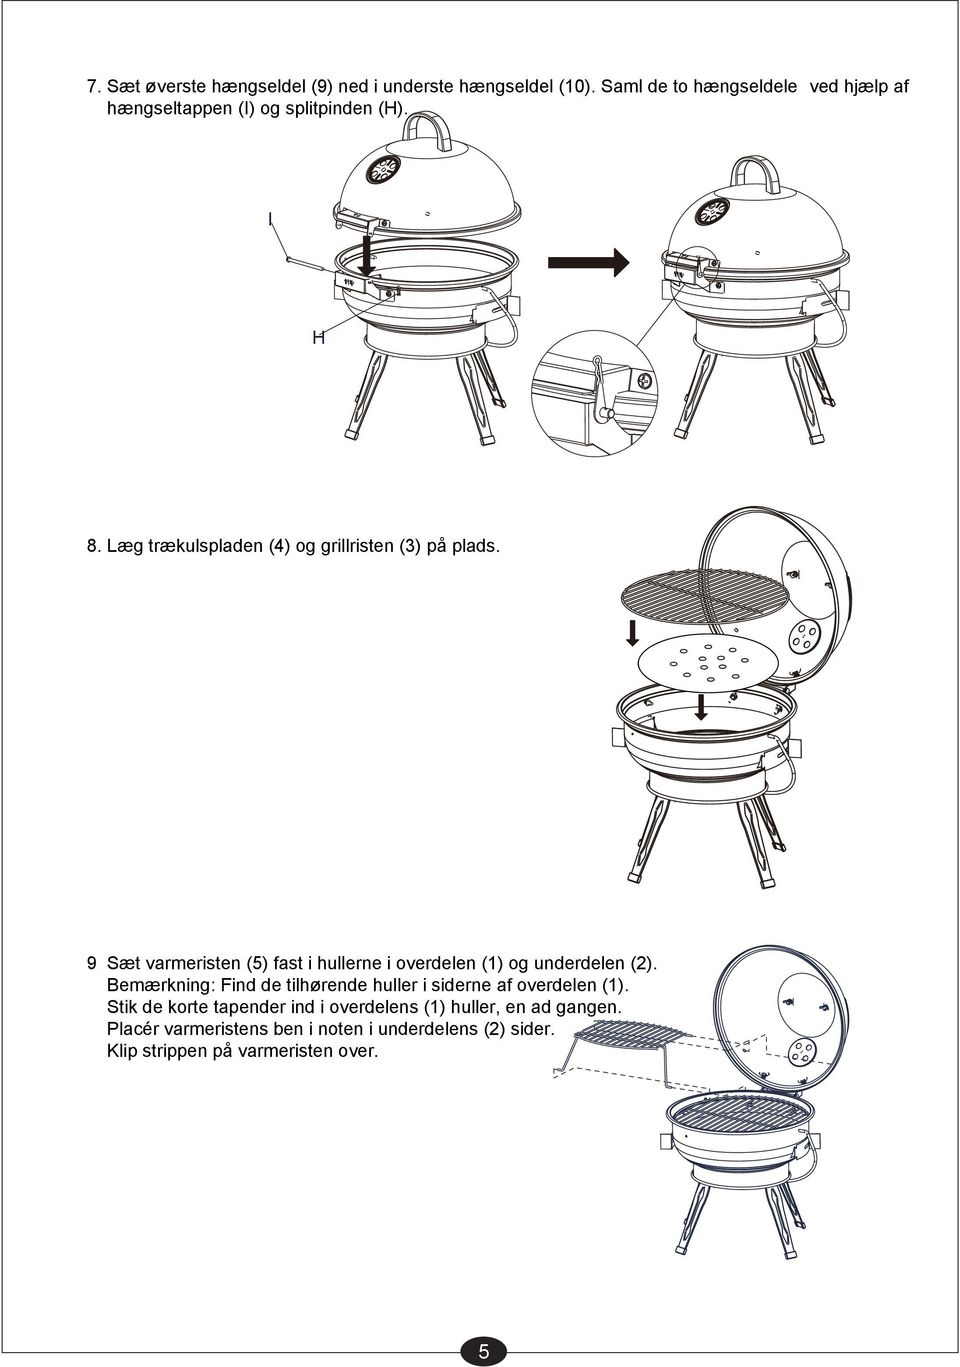 Læg trækulspladen (4) og grillristen (3) på plads. 9 Sæt varmeristen (5) fast i hullerne i overdelen (1) og underdelen (2).